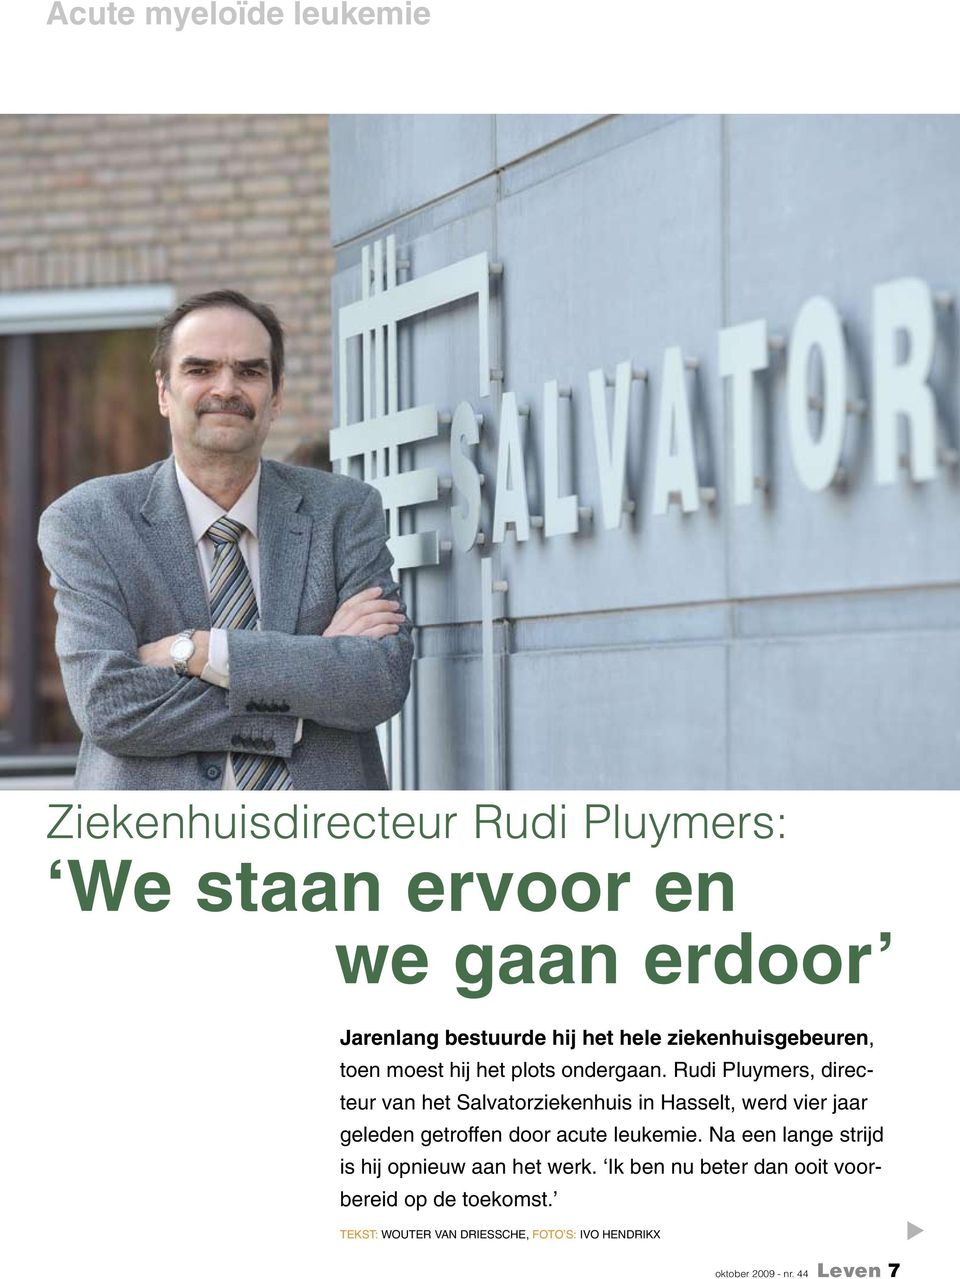 Rudi Pluymers, directeur van het Salvatorziekenhuis in Hasselt, werd vier jaar geleden getroffen door acute leukemie.